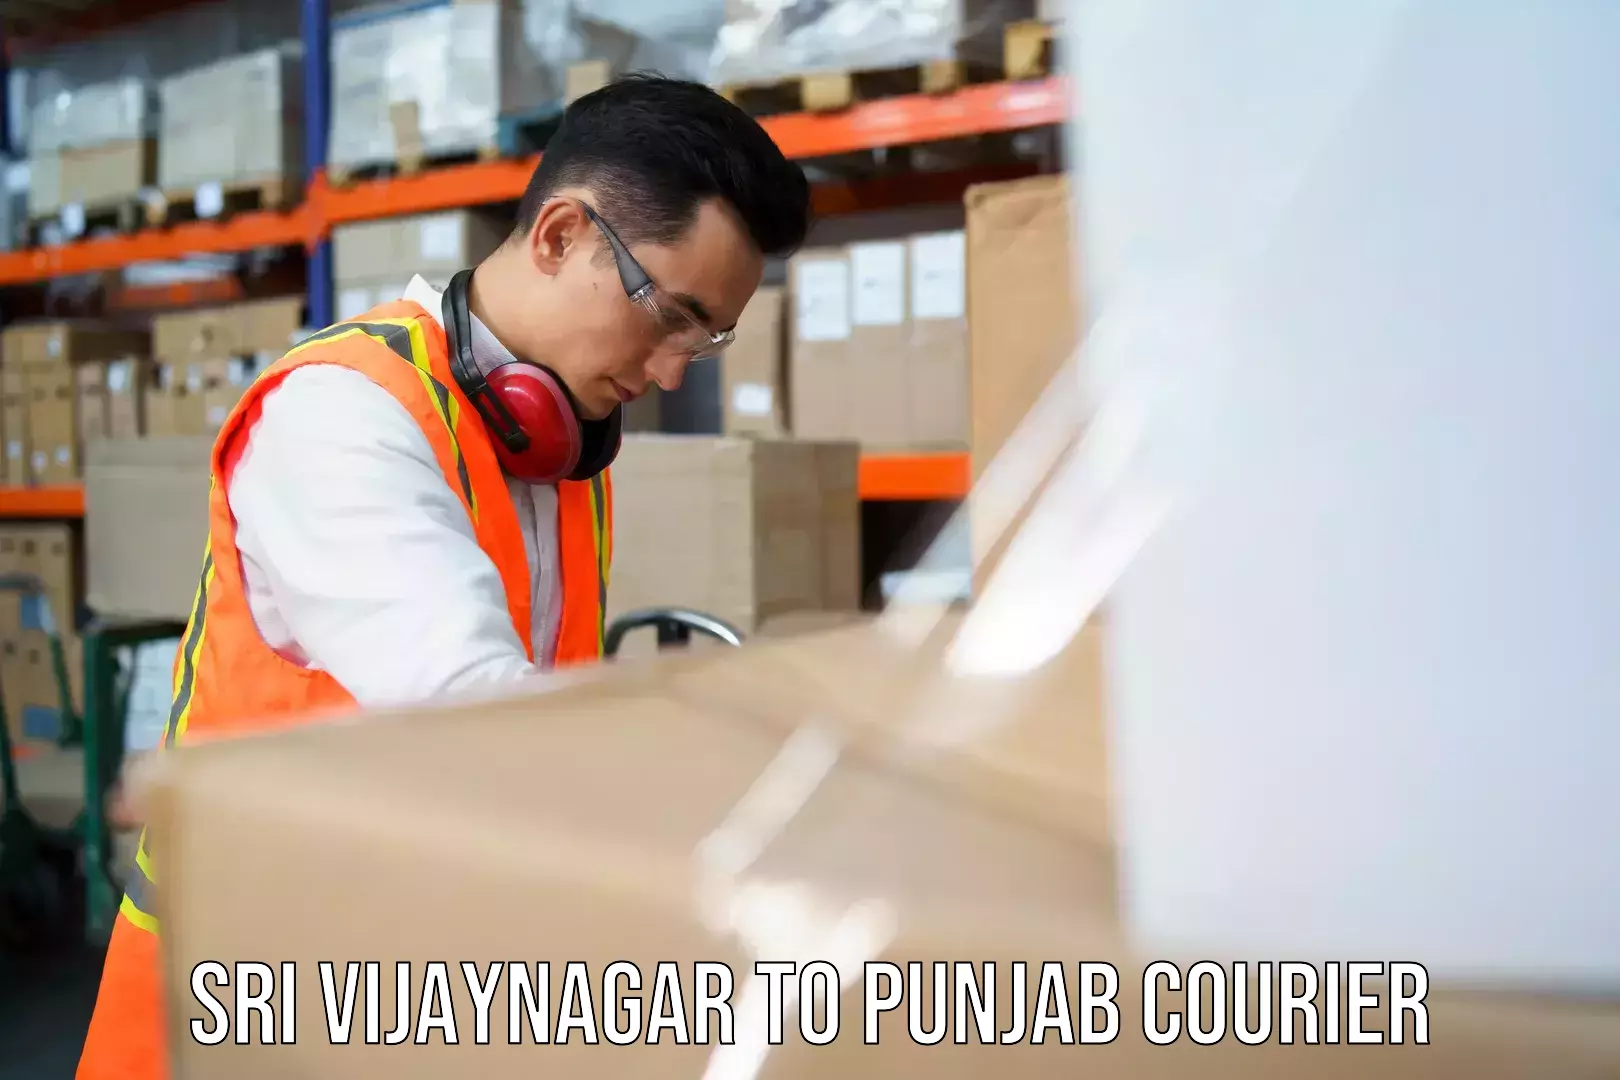 Cargo delivery service Sri Vijaynagar to Phillaur